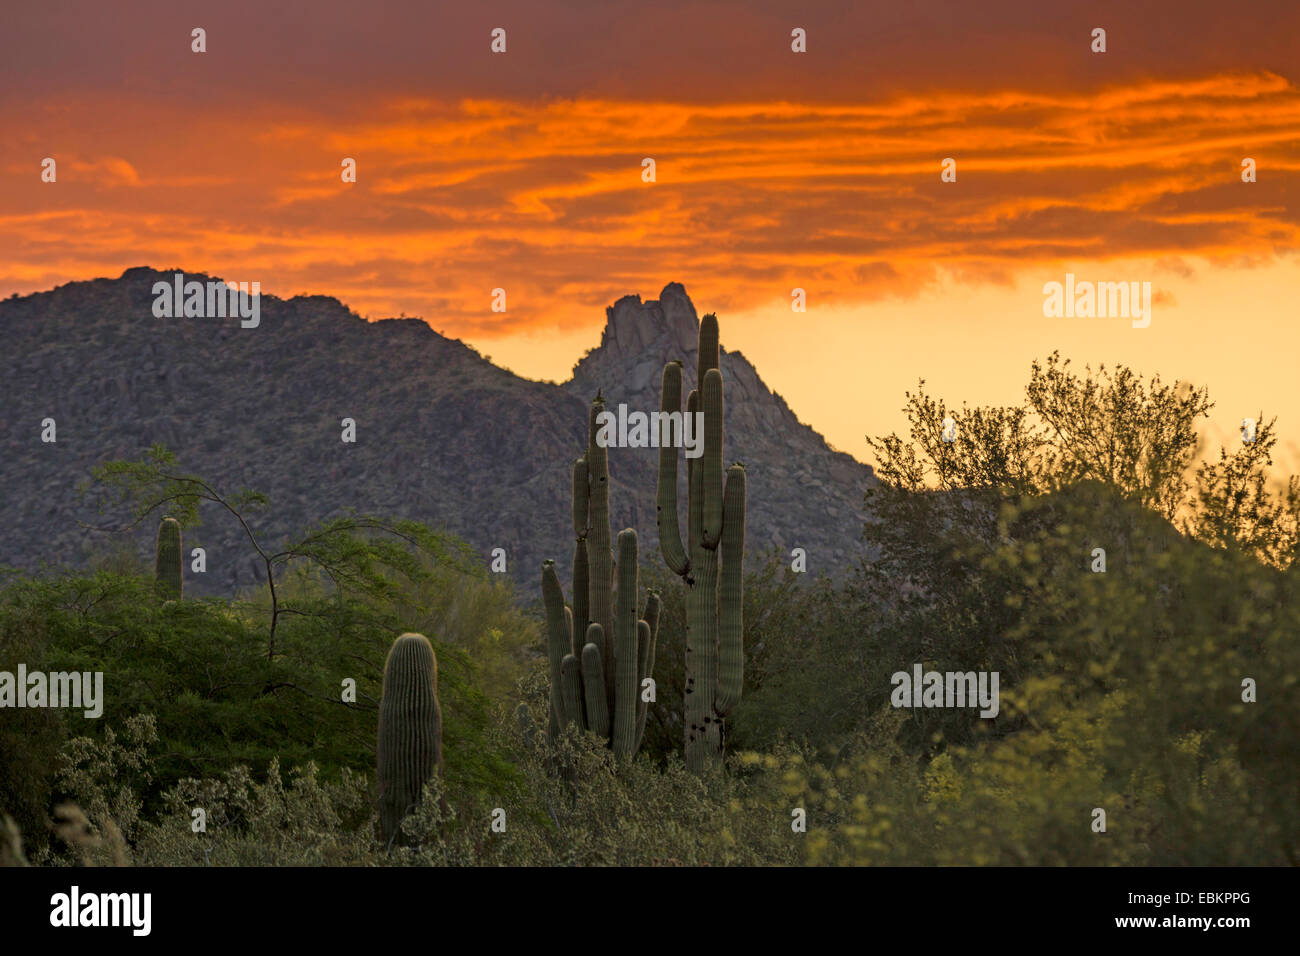 saguaro cactus (Carnegiea gigantea, Cereus giganteus), at sunrise with Pinnacle peak in the background, USA, Arizona, Sonoran Stock Photo